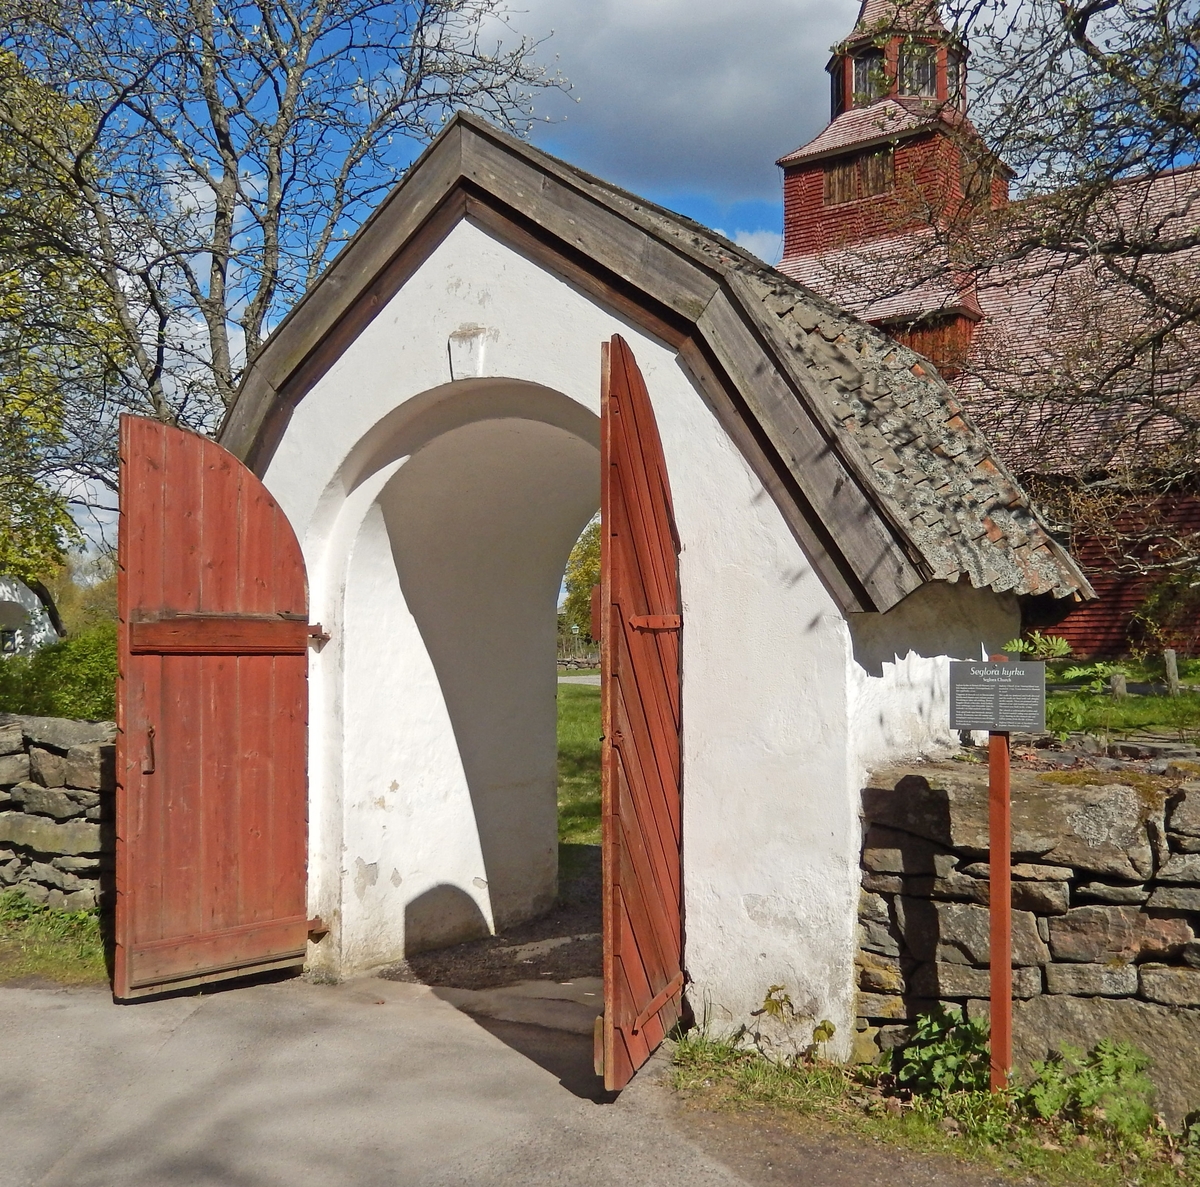 Den södra stigluckan, kyrkogårdsporten, vid Seglora kyrka på Skansen är murad, putsad och vitkalkad. Taket är brutet och klätt med enkupigt tegel. Portdörrarna är av trä, rödmålade, med stående panel på insidan samt fiskbenspanel på utsidan. Södra stigluckan på Skansen är uppförd som en kopia av den södra stigluckan "Prästgårdsporten" vid Seglora kyrka i Västergötland.